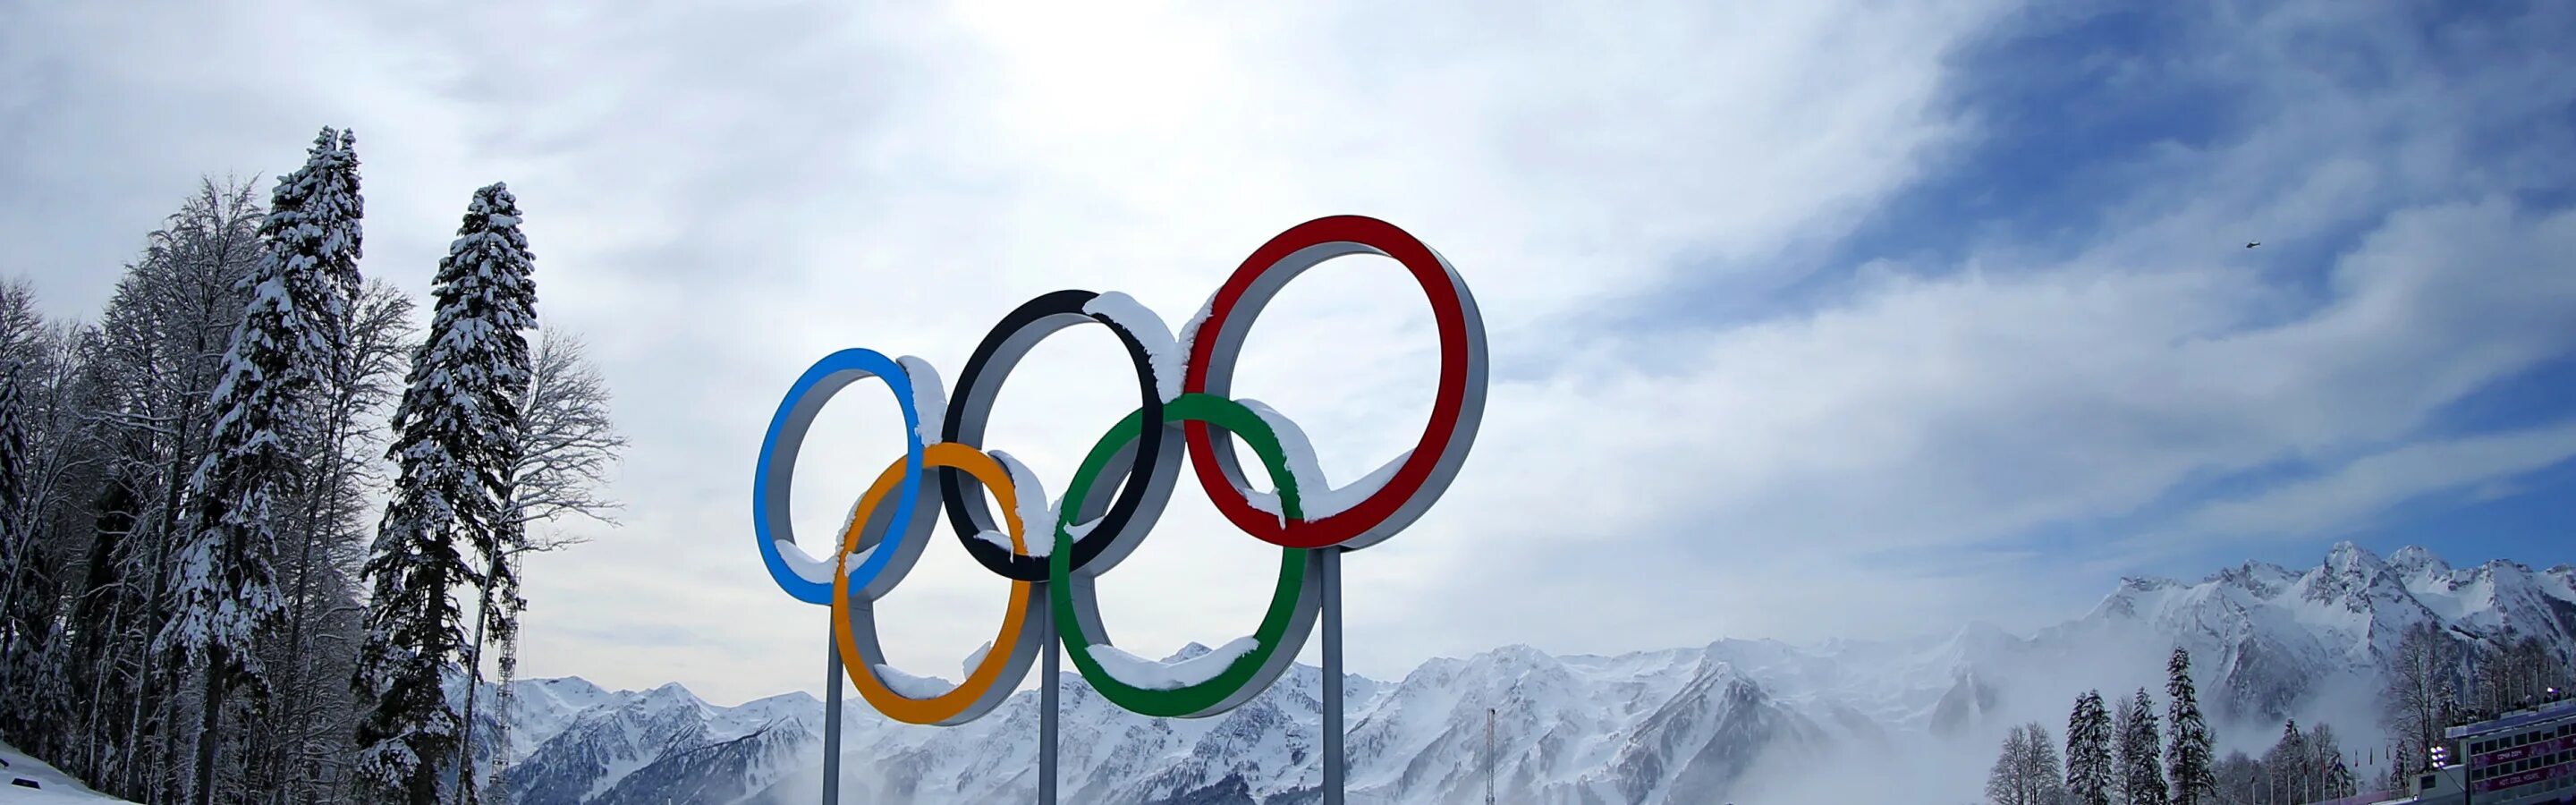 Олимпийские кольца Сочи 2014. Олимпийские кольца на фоне гор. Олимпийские кольца в Сочи. Кольца олимпиады сочи 2014